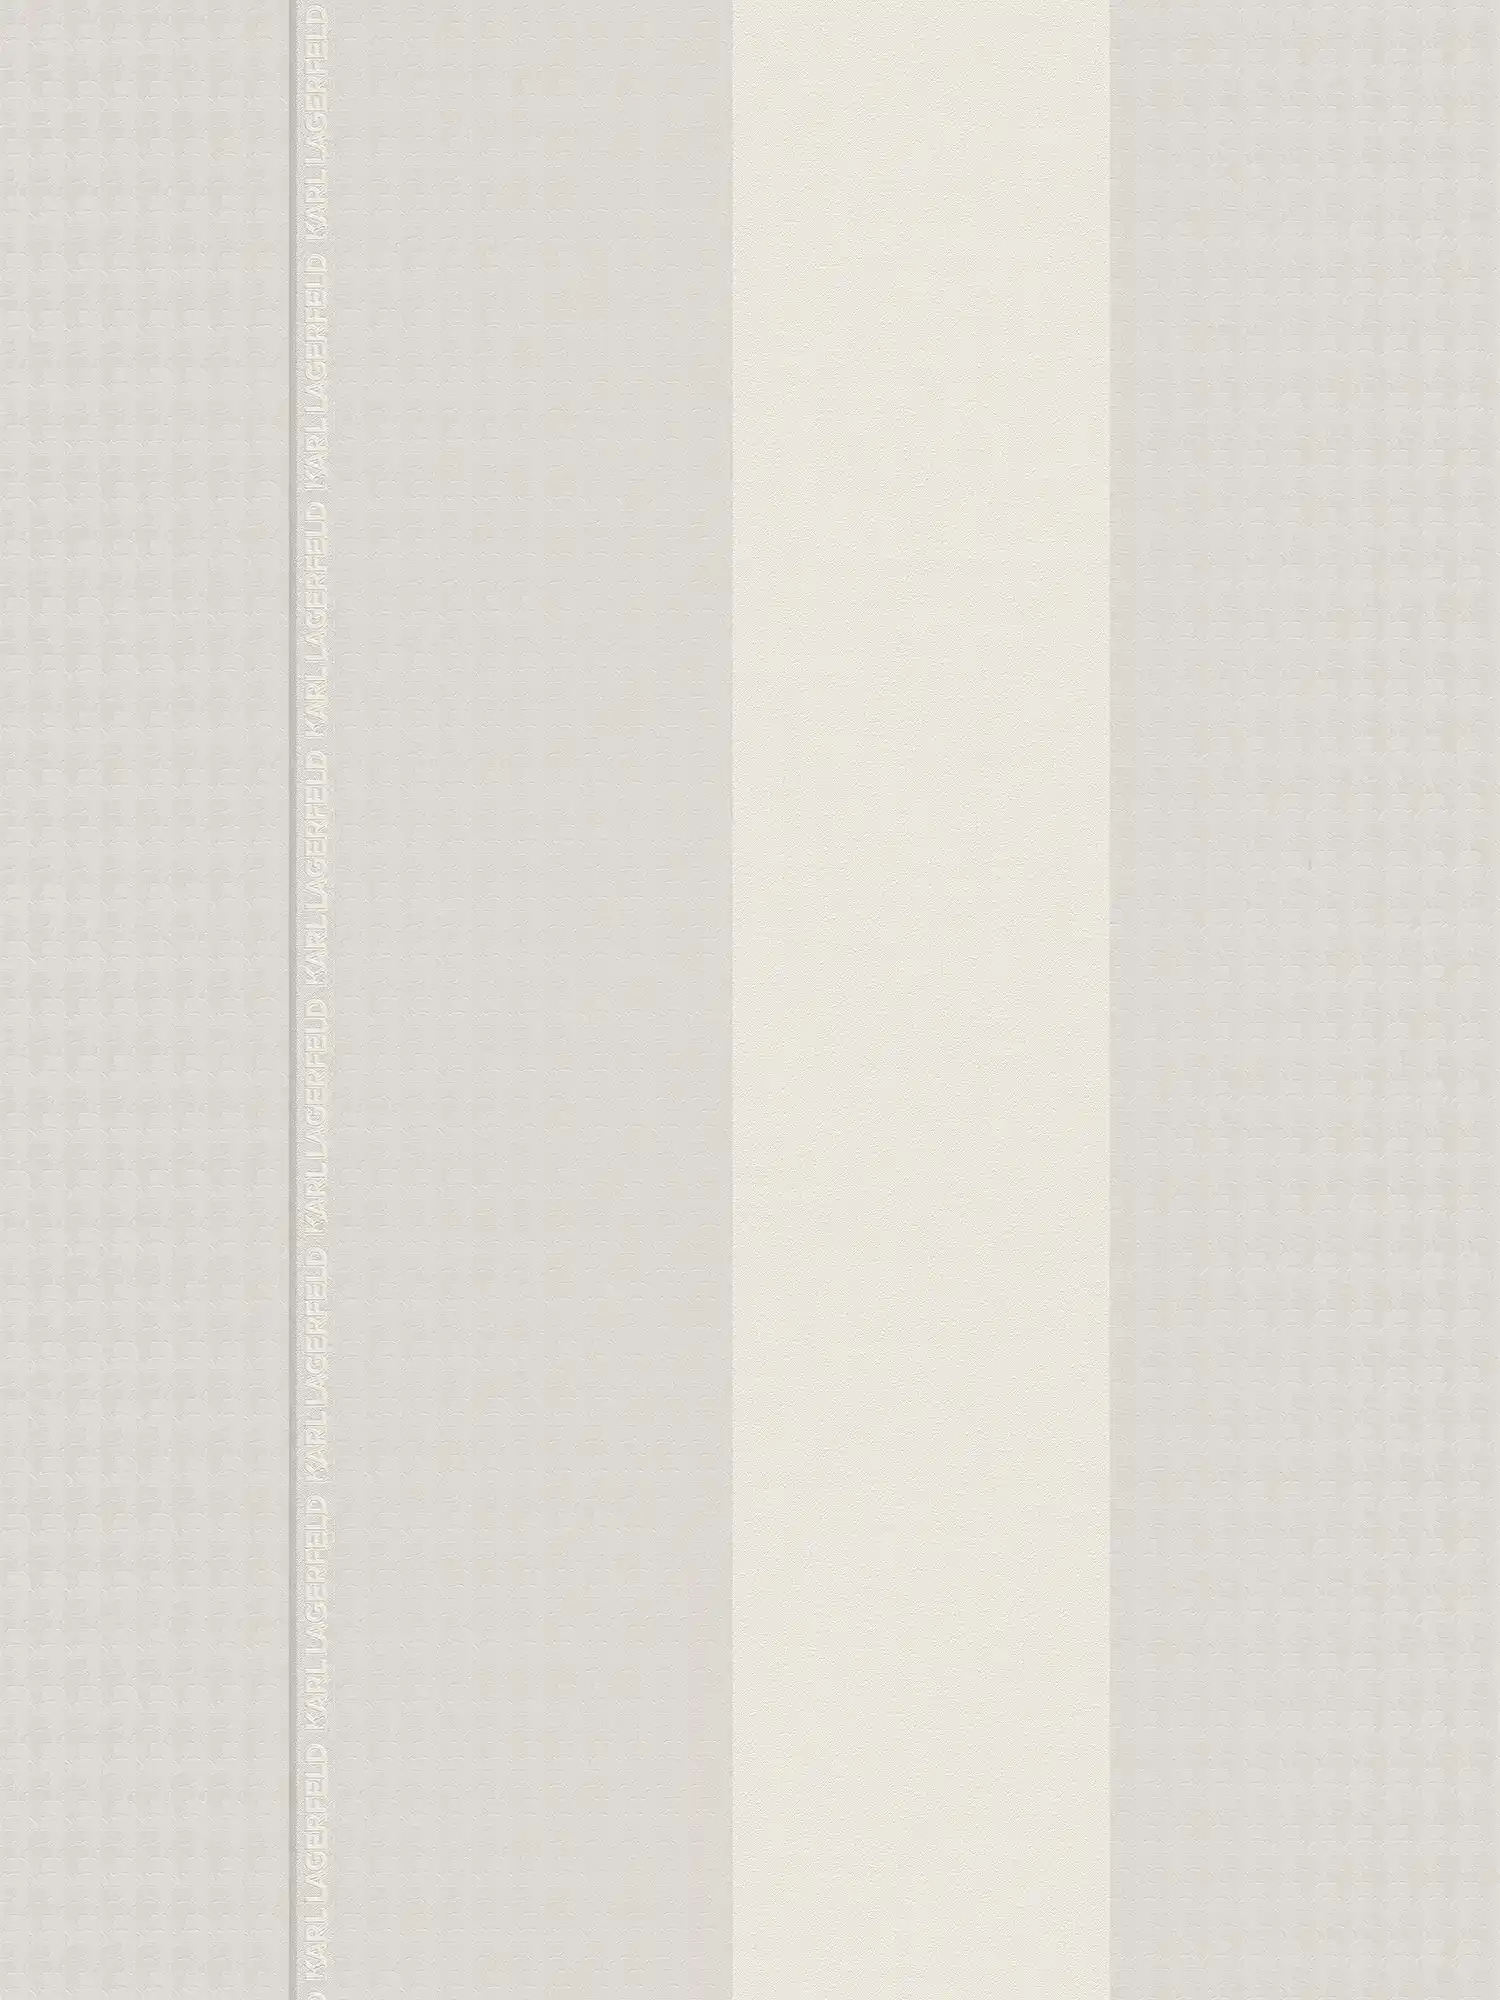 Karl LAGERFELD vliesbehangstroken met textuureffect - grijs, wit
